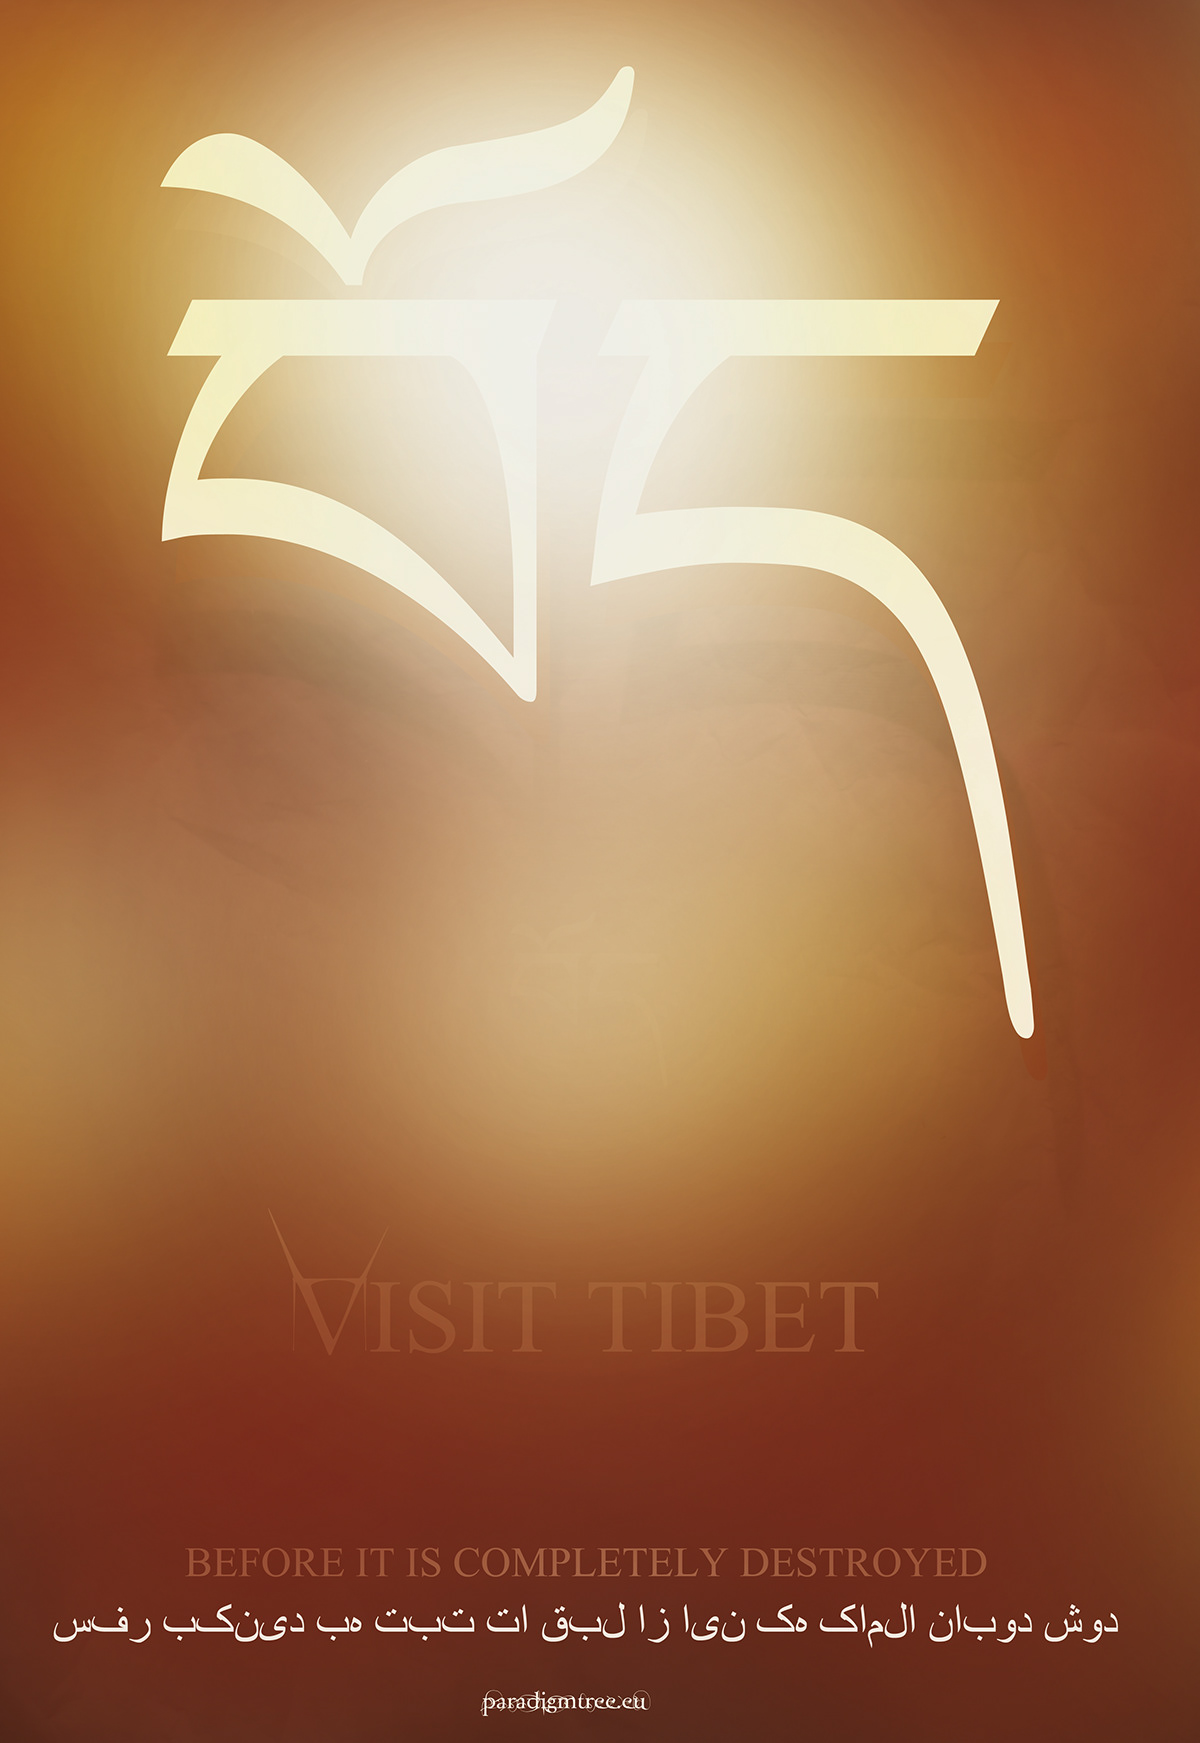 tibet farsi persian poster tourism font Iran